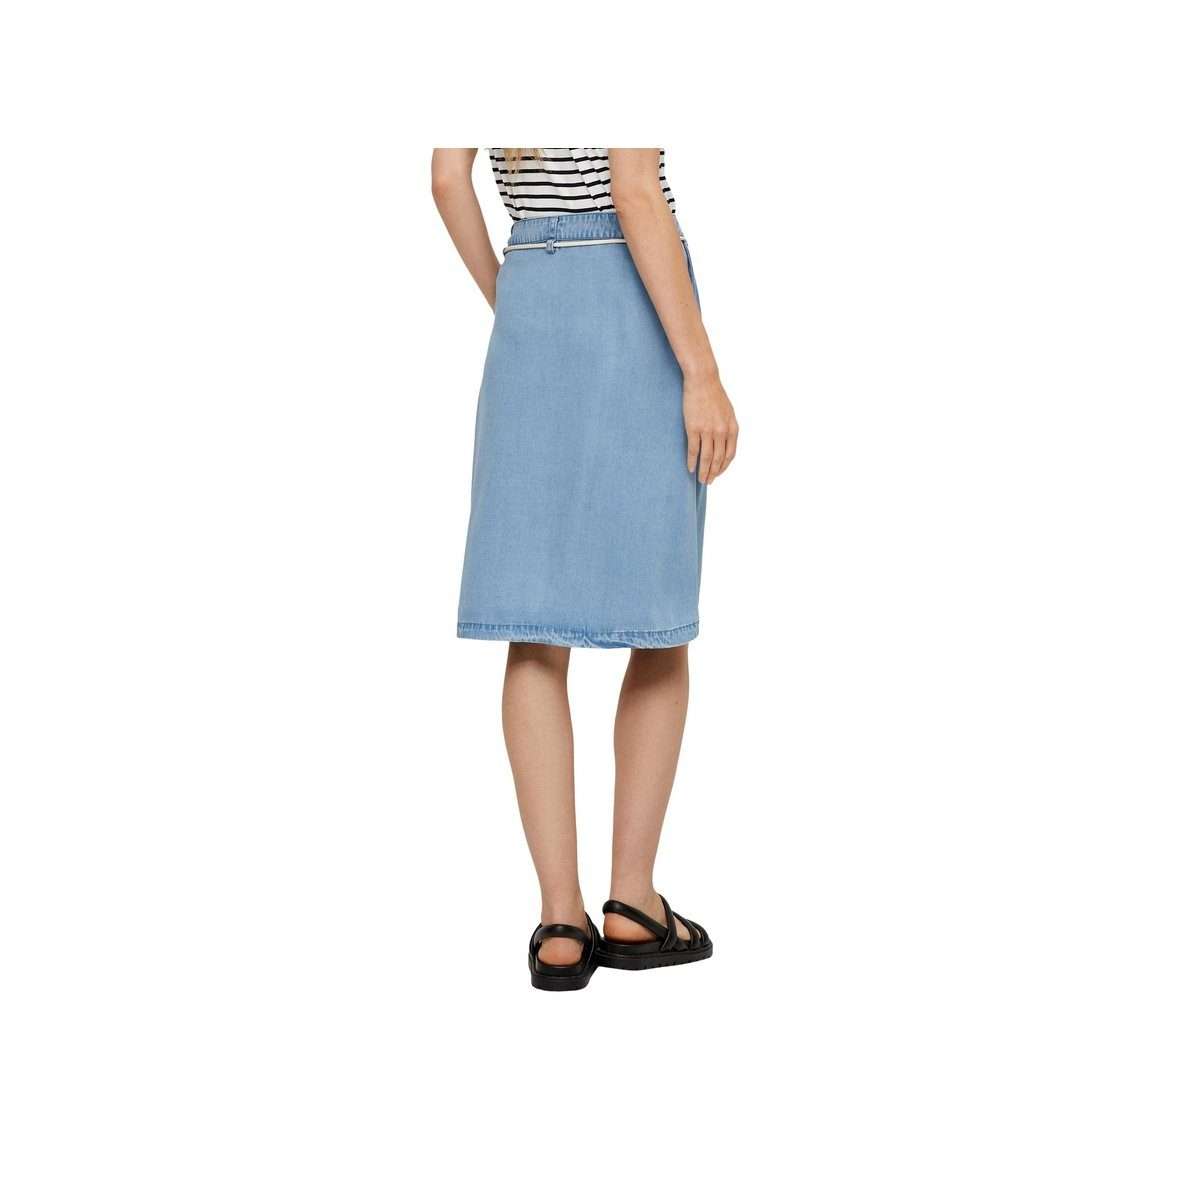 Мини-юбка Легкая джинсовая юбка из лиоцеллового красителя.